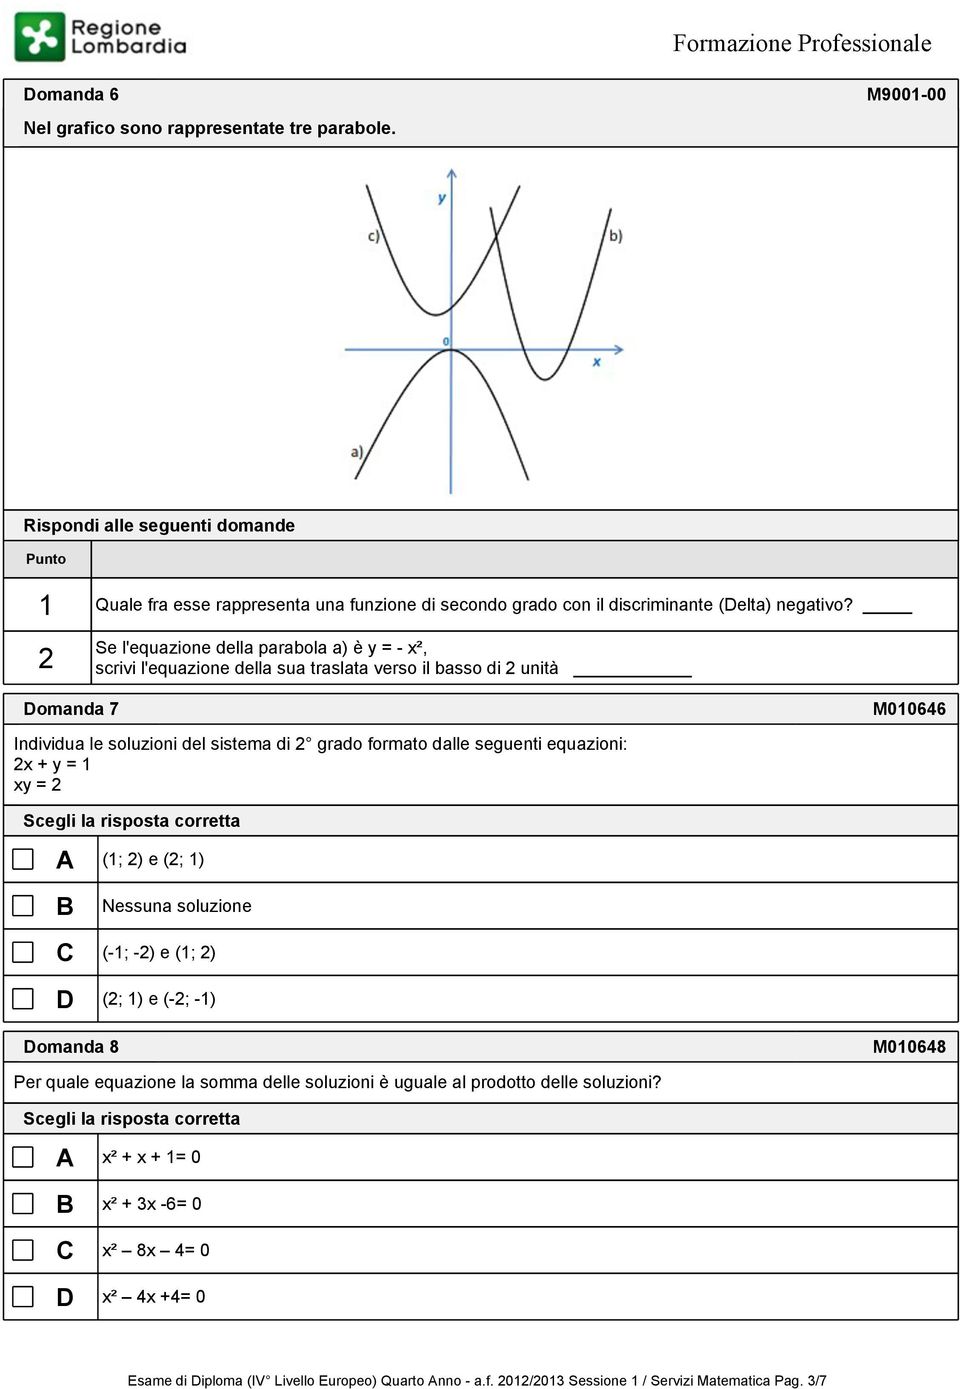 2 Se l'equazione della parabola a) è y = - x², scrivi l'equazione della sua traslata verso il basso di 2 unità omanda 7 M010646 Individua le soluzioni del sistema di 2 grado formato dalle